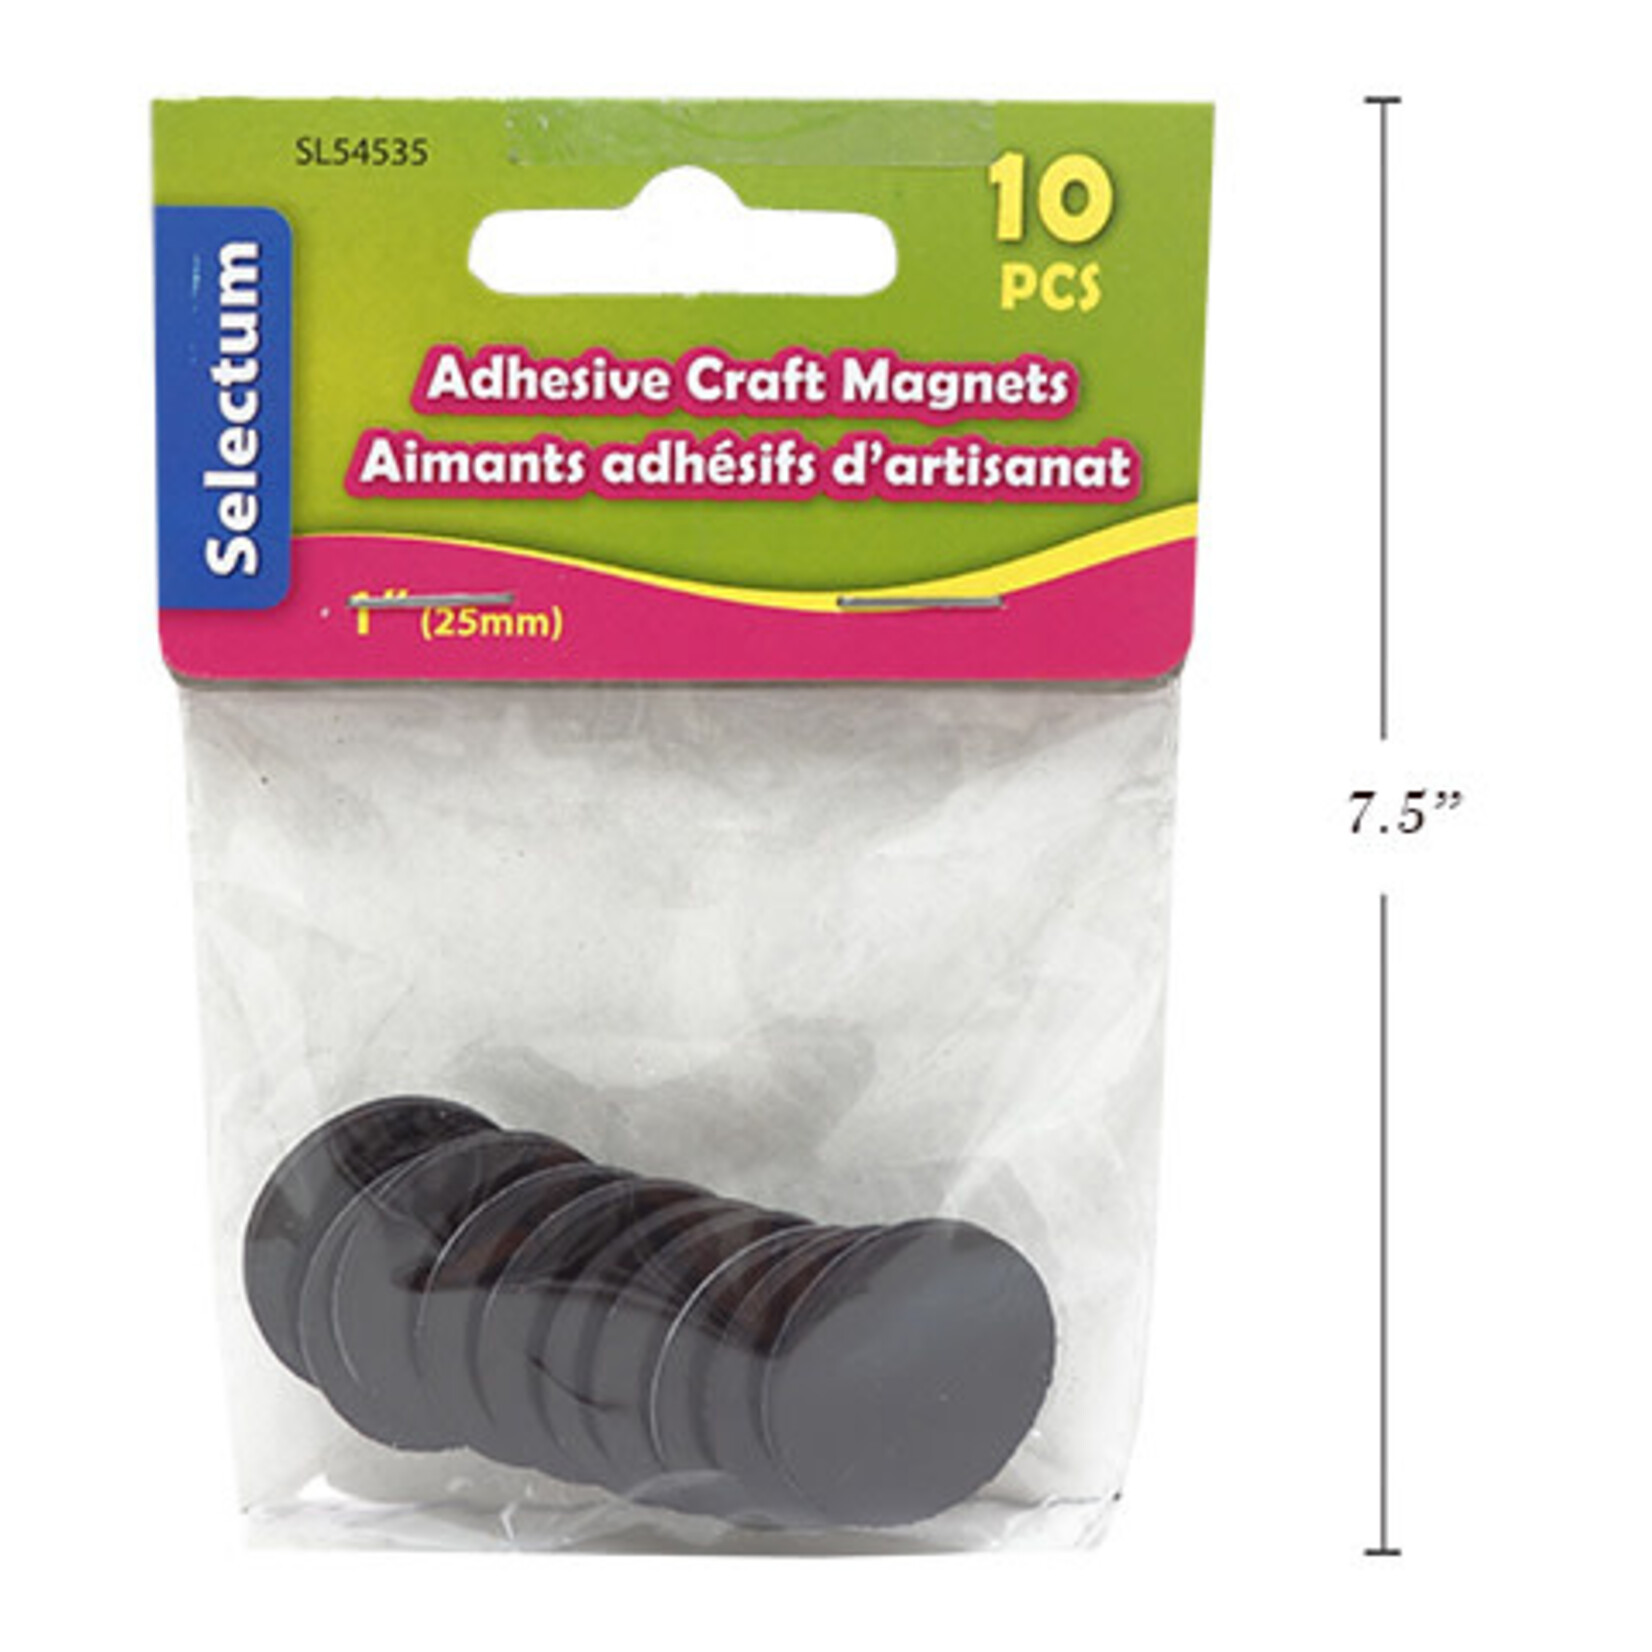 Round Adhesive Craft Magnets 1" (25mm) 10/Pk